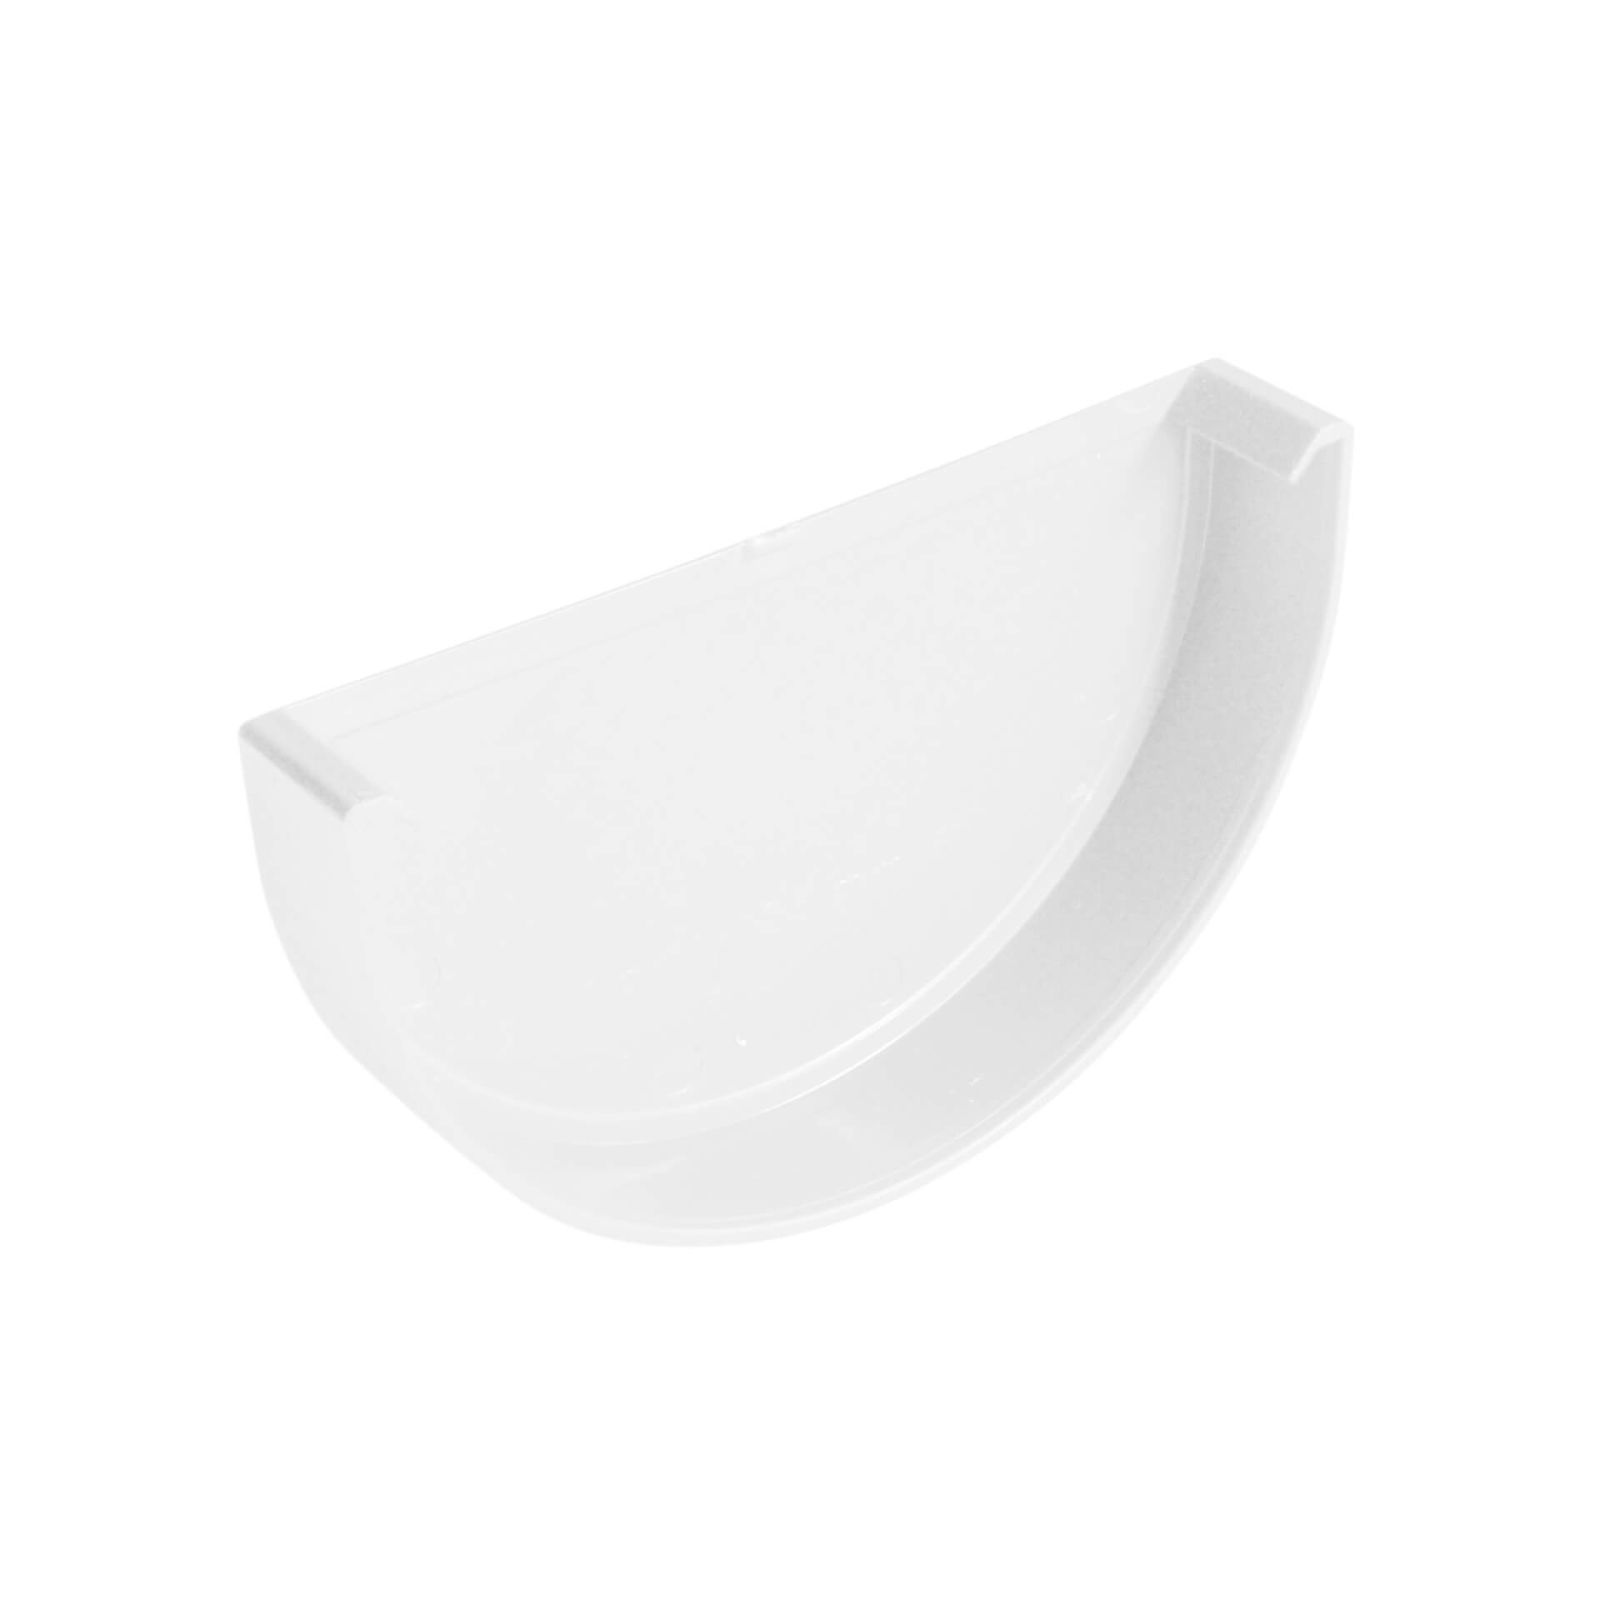 Kunststoff Dachrinnen Sparpaket 4 m | Ø 100/75 mm | Farbe Weiß #3